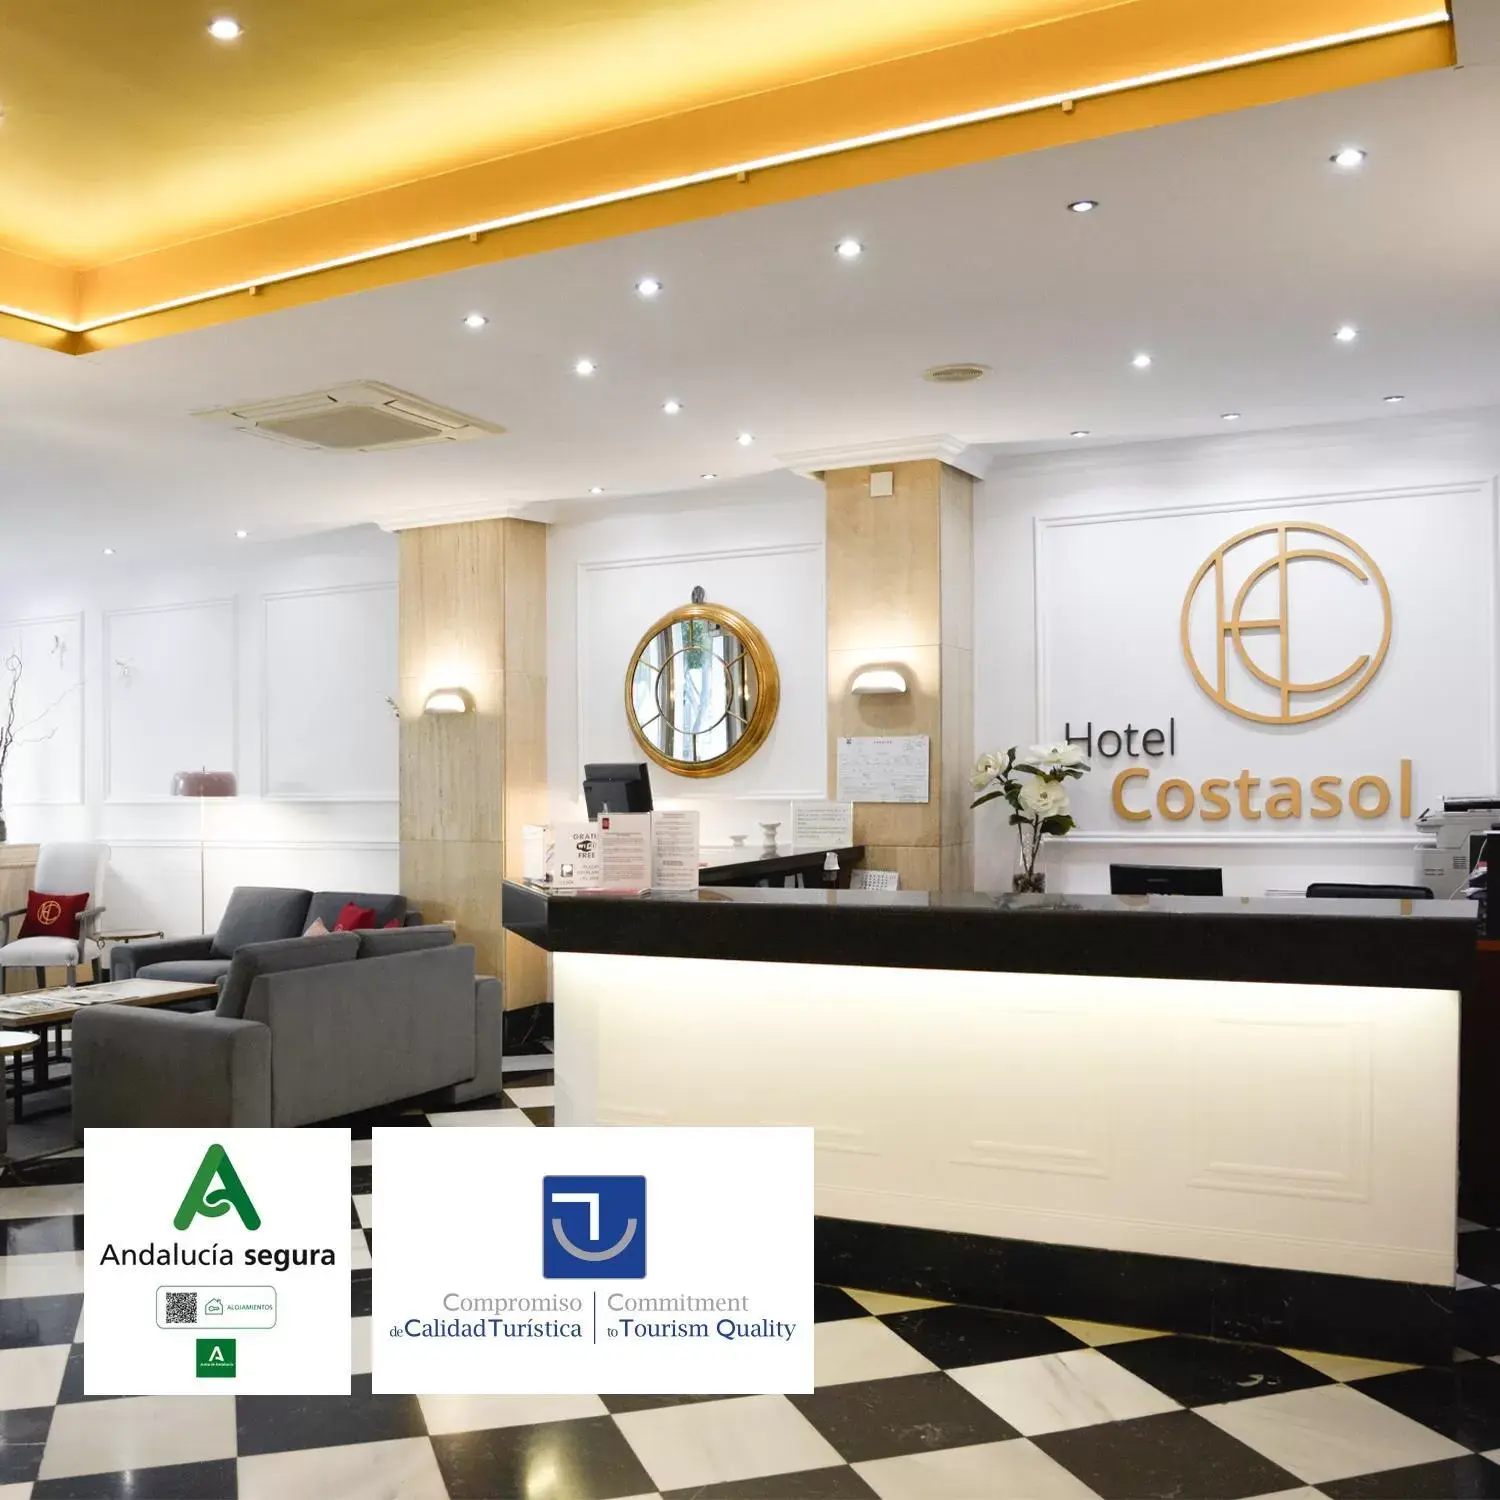 Lobby or reception in Hotel Costasol